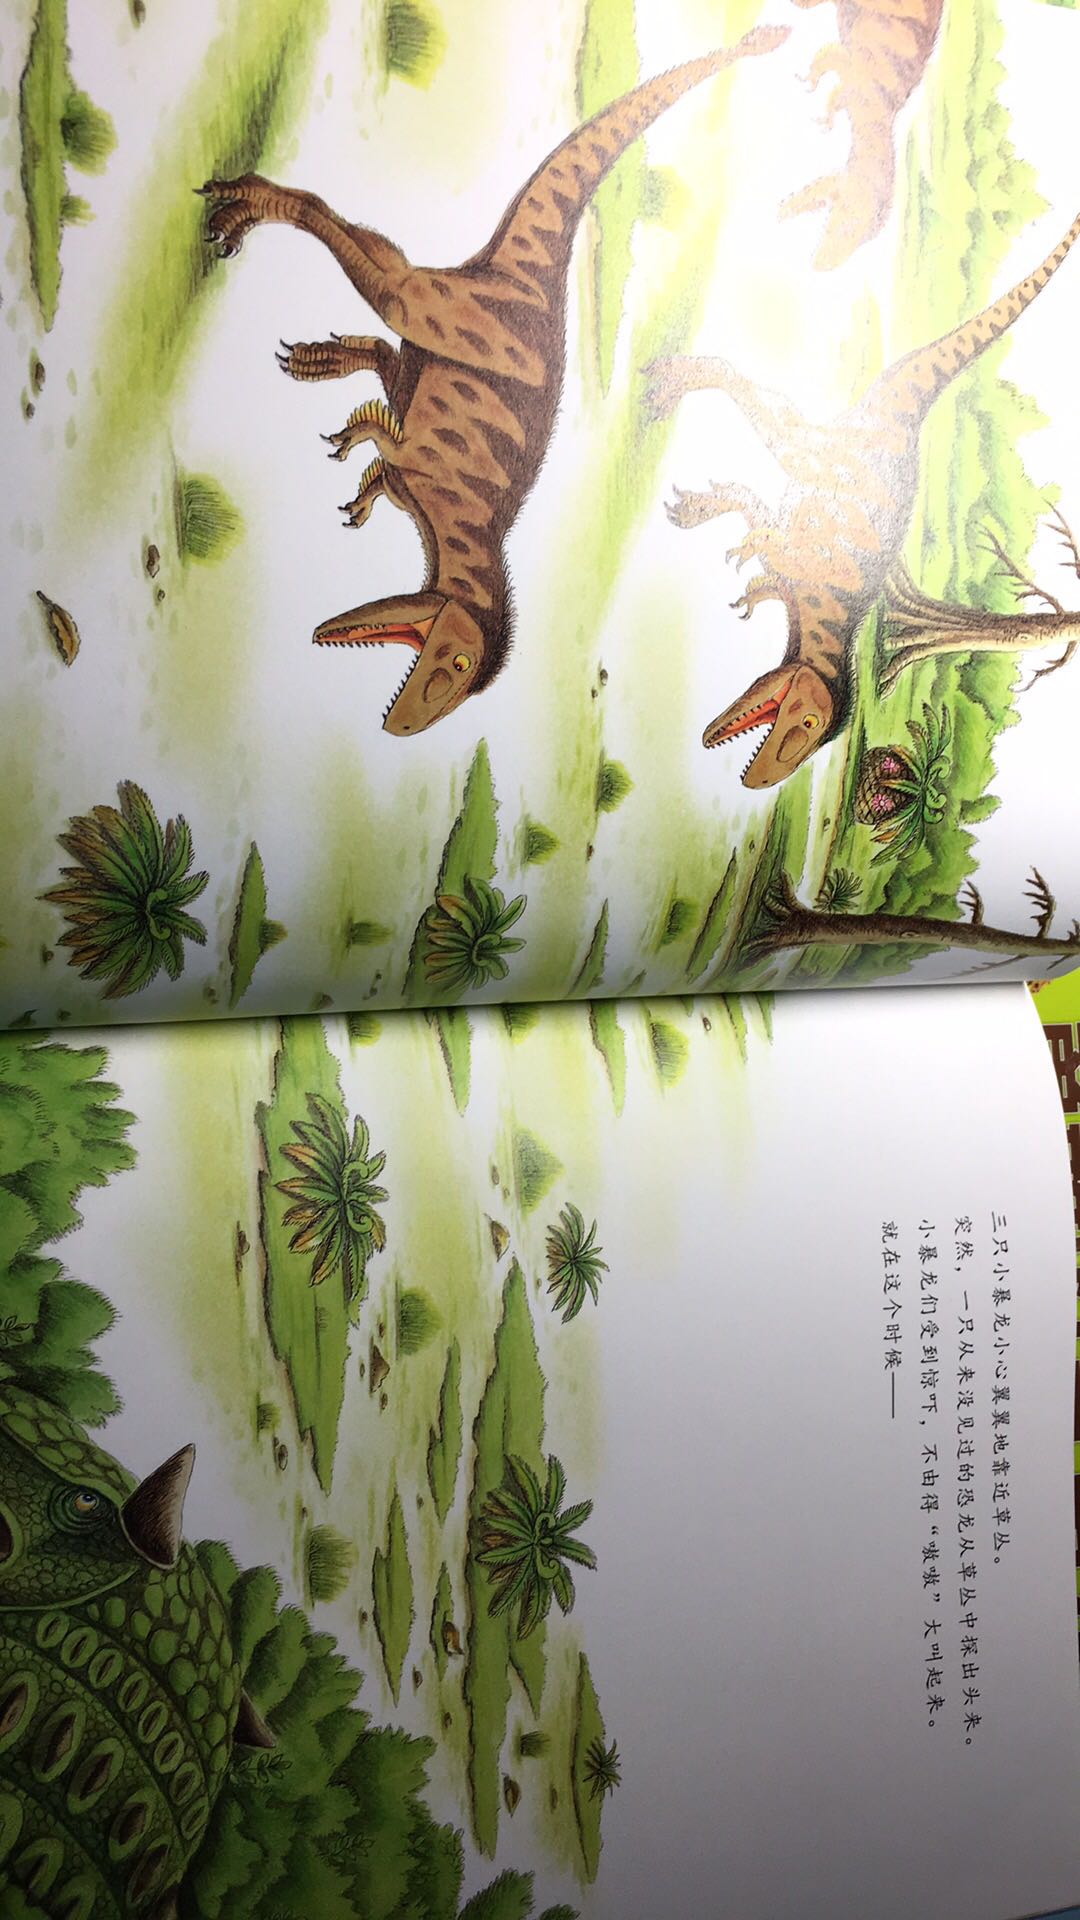 女儿是个恐龙迷，几乎所有恐龙的绘本都买了。这套是《恐龙大陆》作者的新书，一看到立刻买下。反复读了好几遍。非常满意。